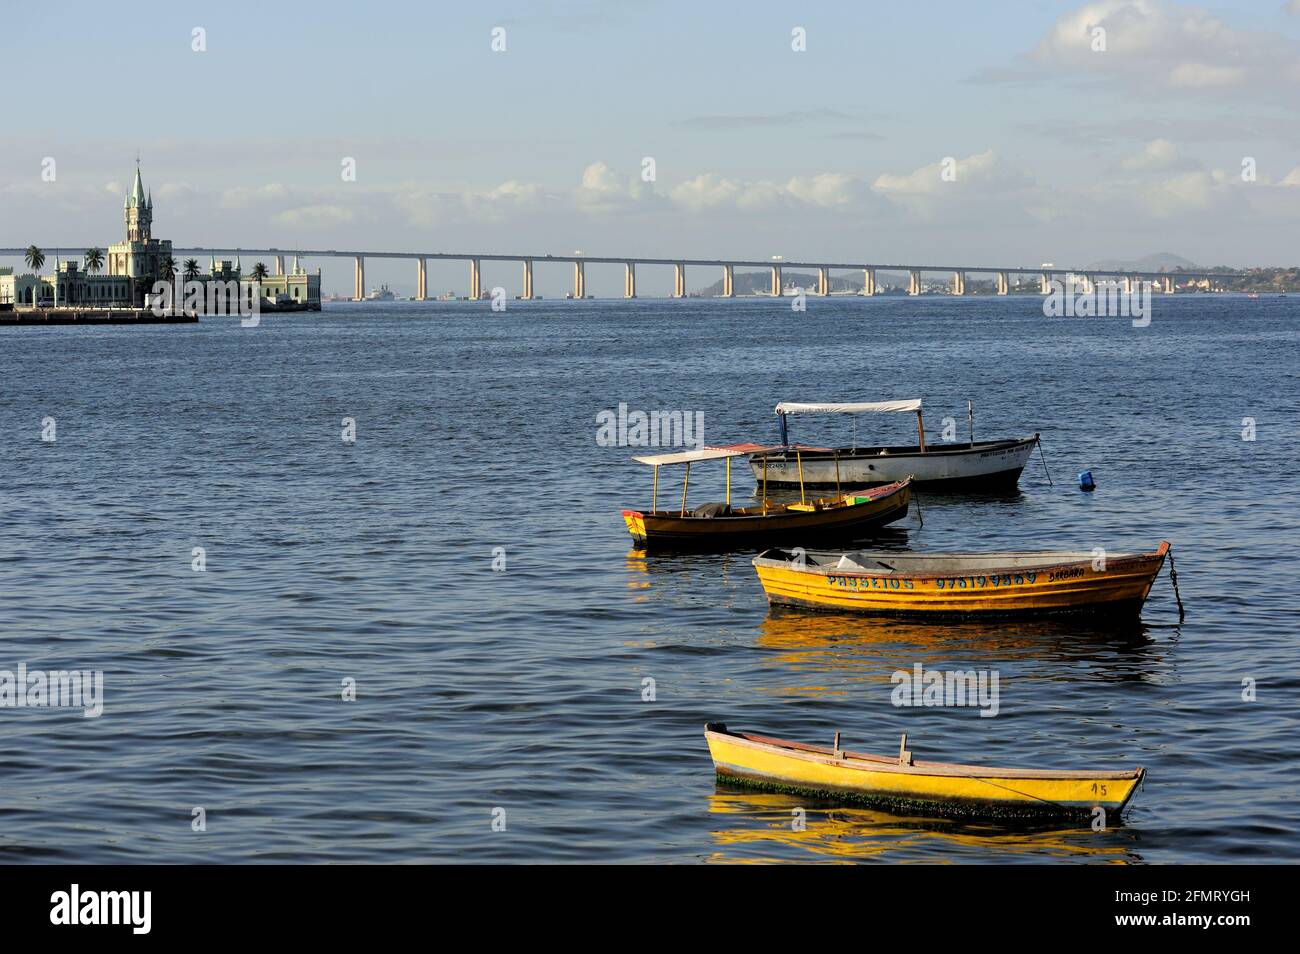 Brasilien – 12. August 2016: Fischerboote schwimmen auf den Gewässern der Guanabara Bay. Blick auf die Rio-Niteroi-Brücke und die Fiskalinsel in der Ferne. Stockfoto